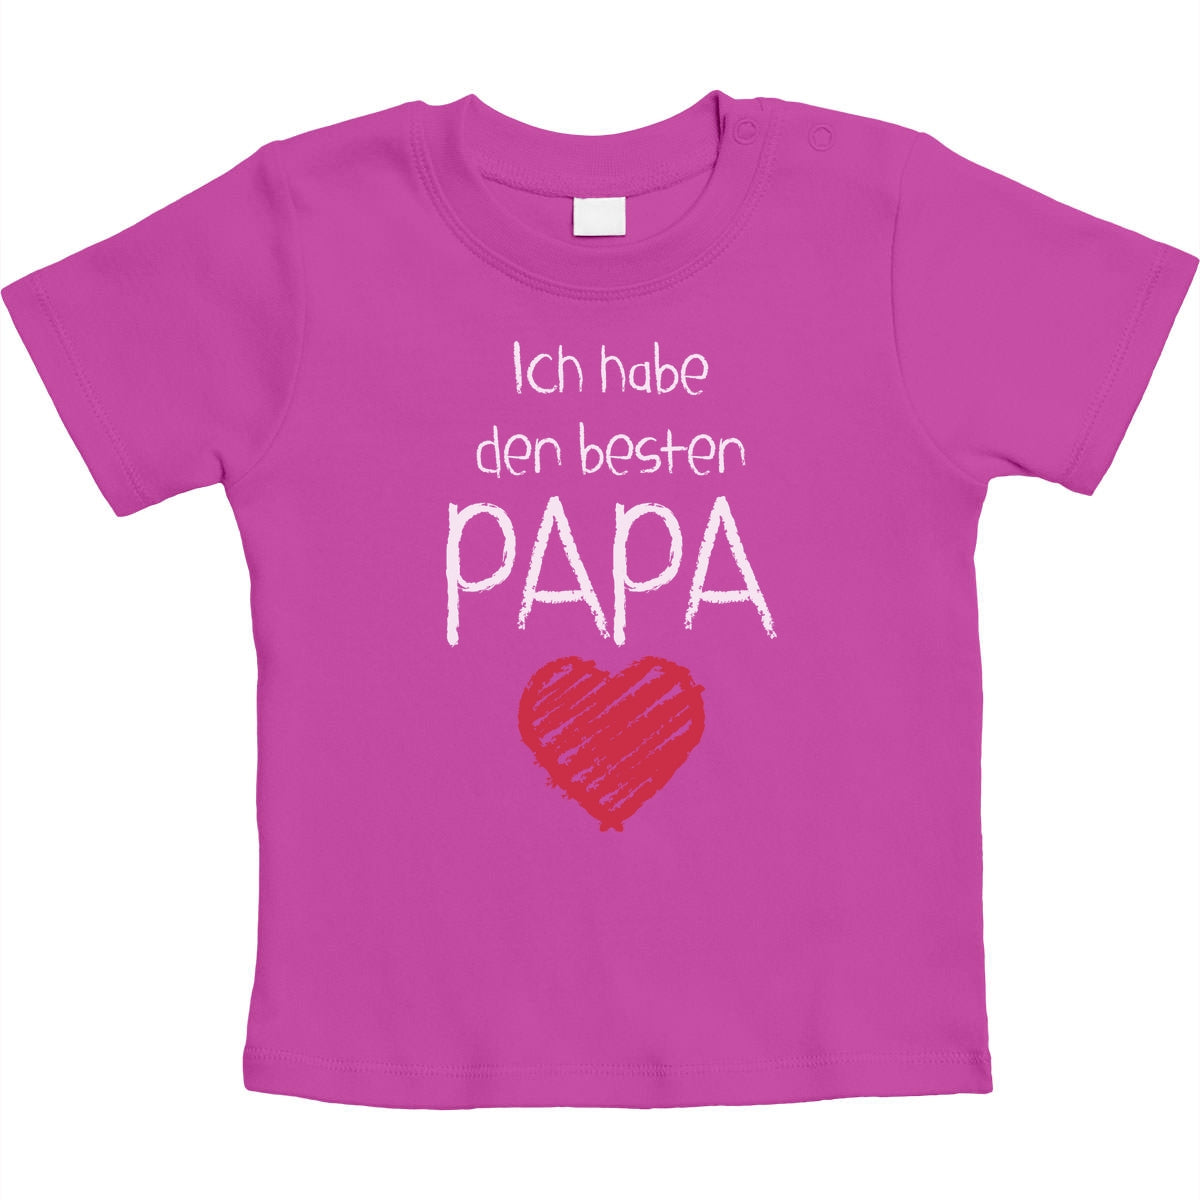 Ich habe den besten Papa mit Herz Unisex Baby T-Shirt Gr. 66-93